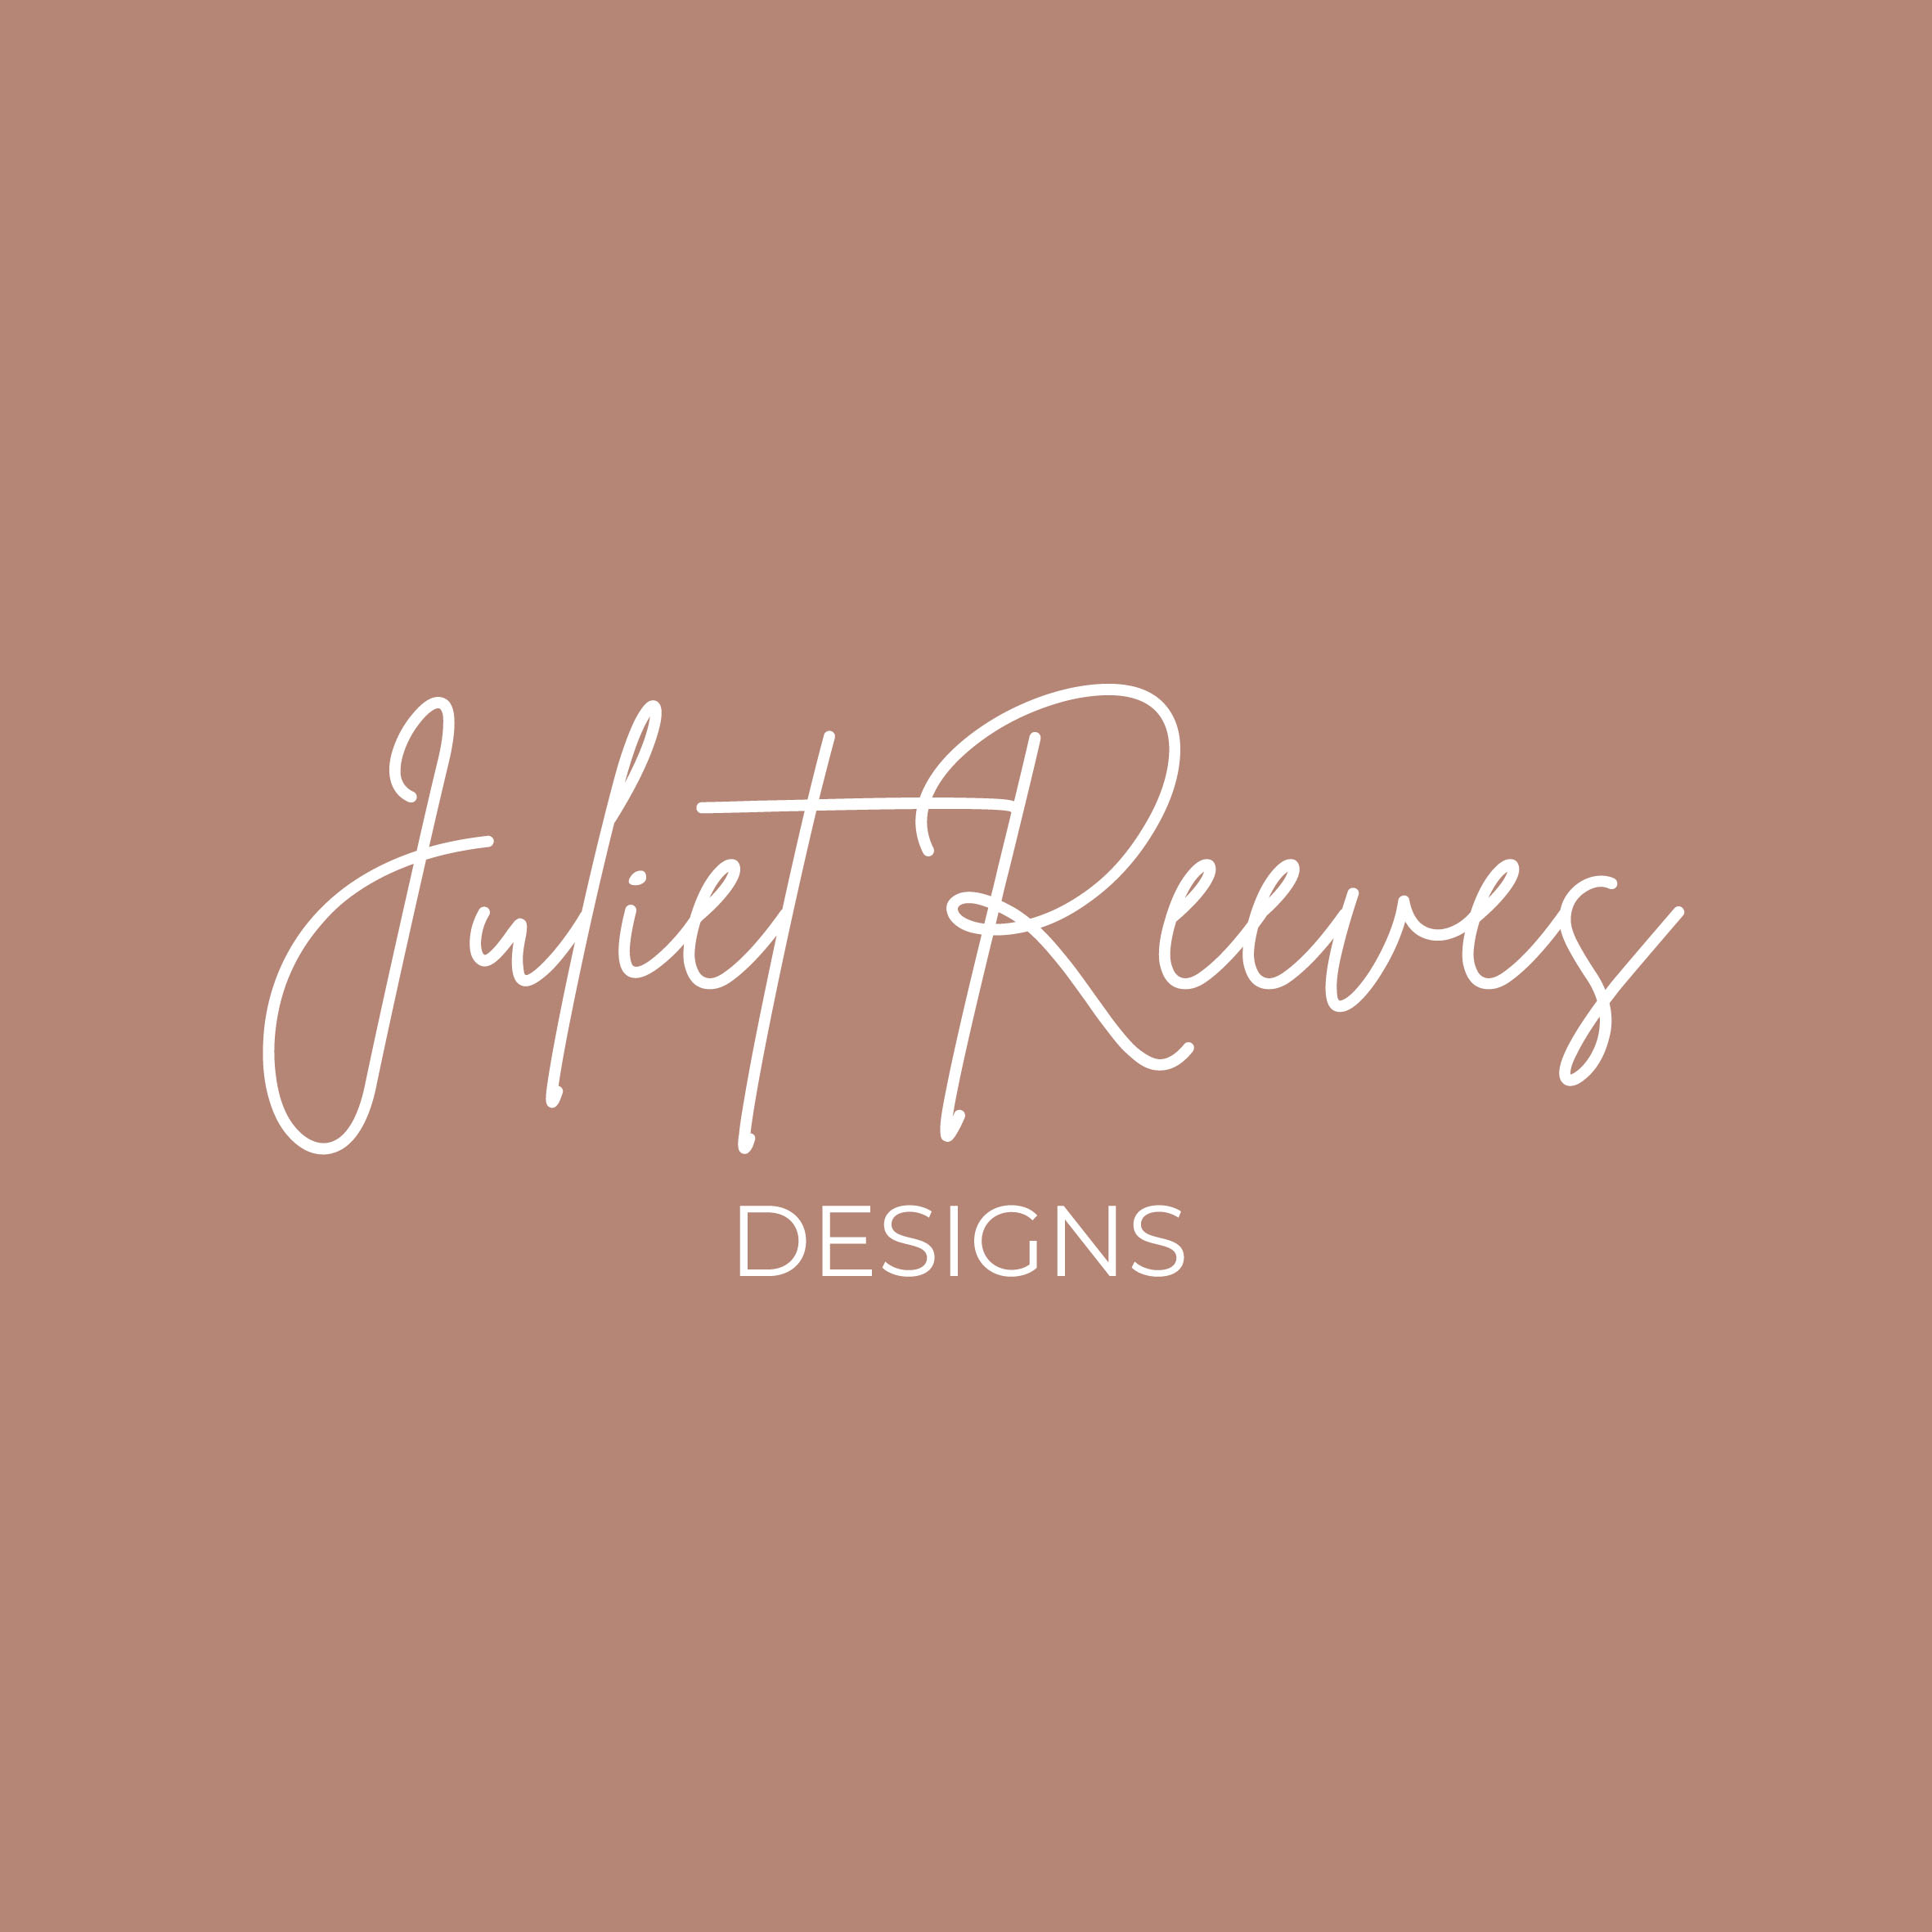 Juliet Reeves Designs | Storefront | notonthehighstreet.com